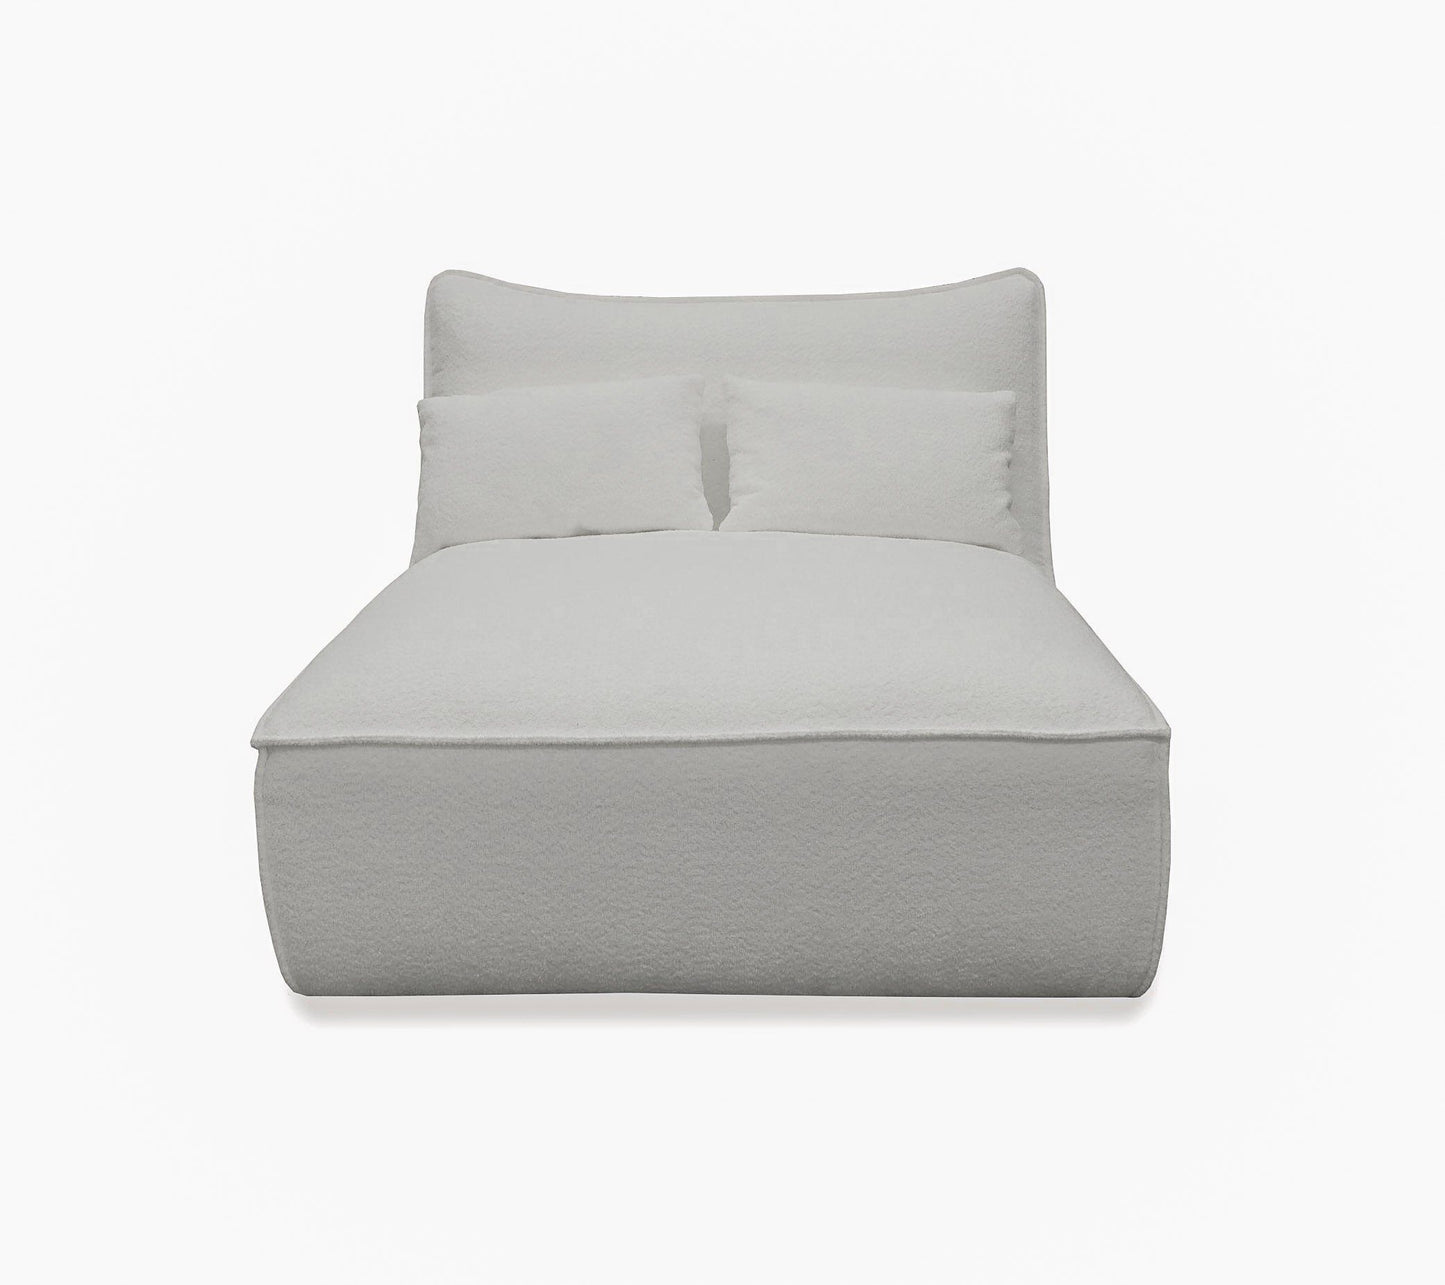 Divani Casa Racine Modern White Fabric Modular Sectional Sofa 4